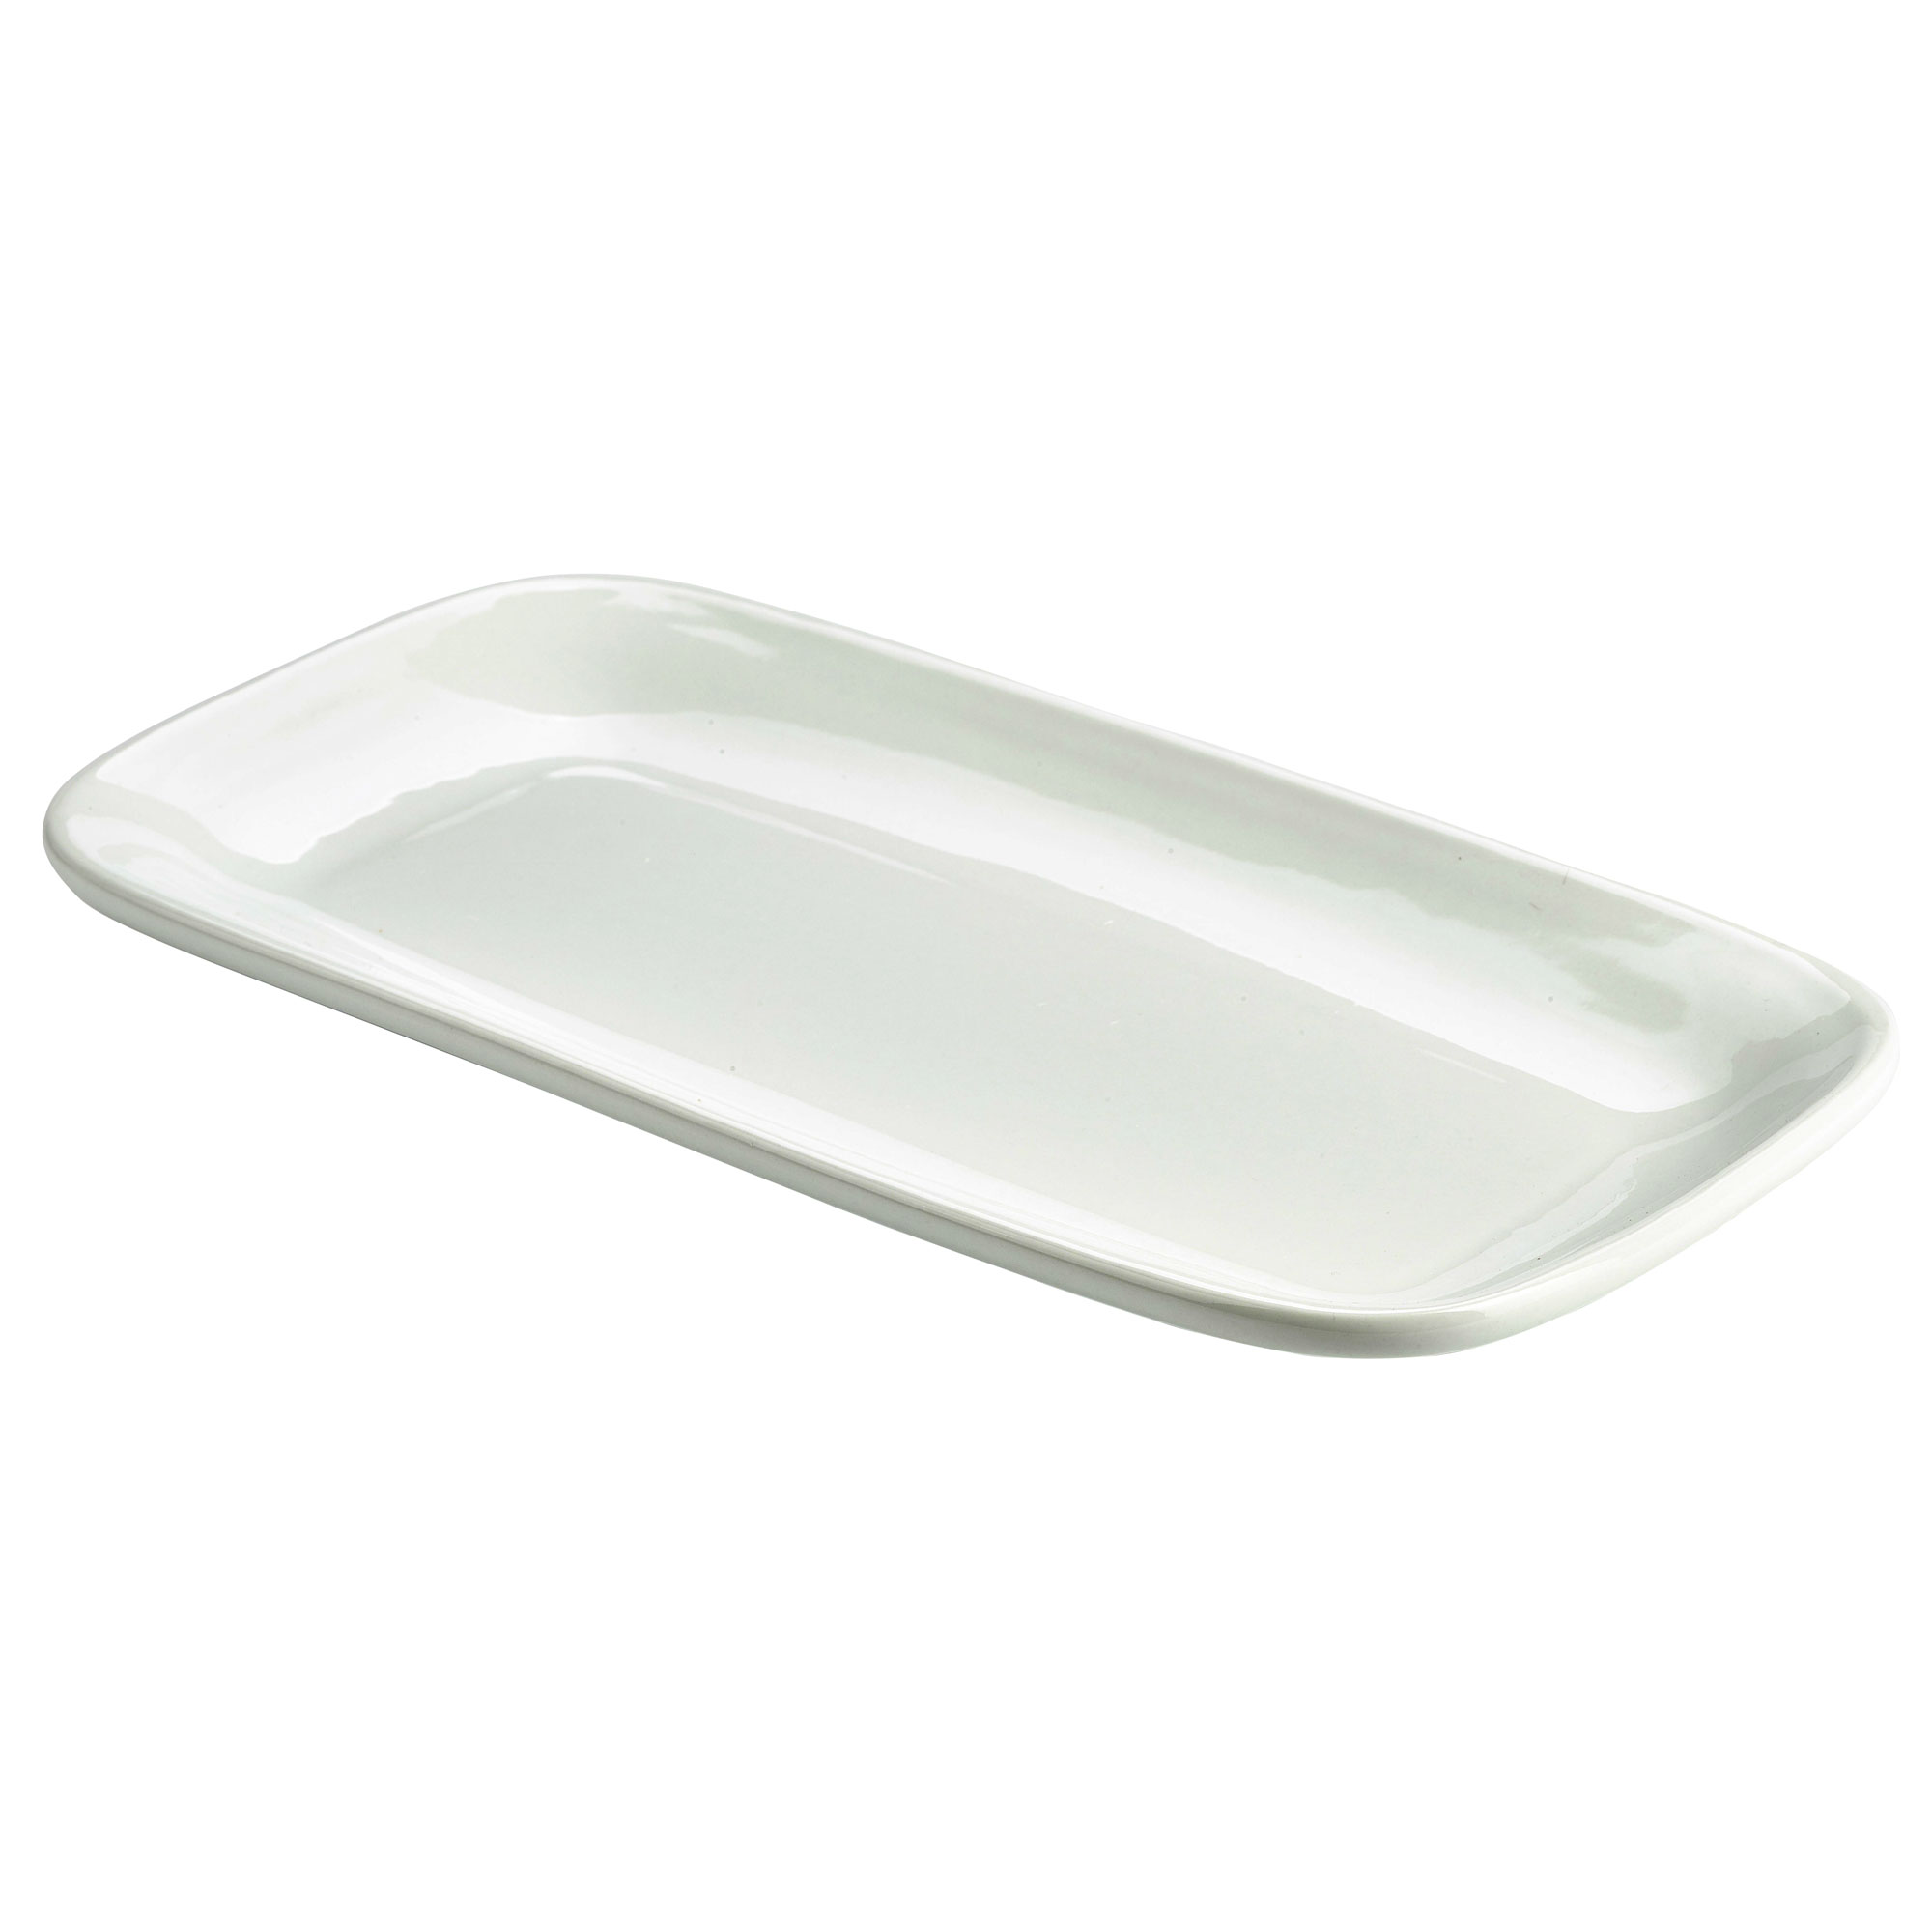 Тарелка длинная. Блюдо прямоугольное 20x28 cm опал белый Bormioli Rocco. Тарелка прямоугольная белая. Тарелка прямоугольная узкая. Блюдце прямоугольное.